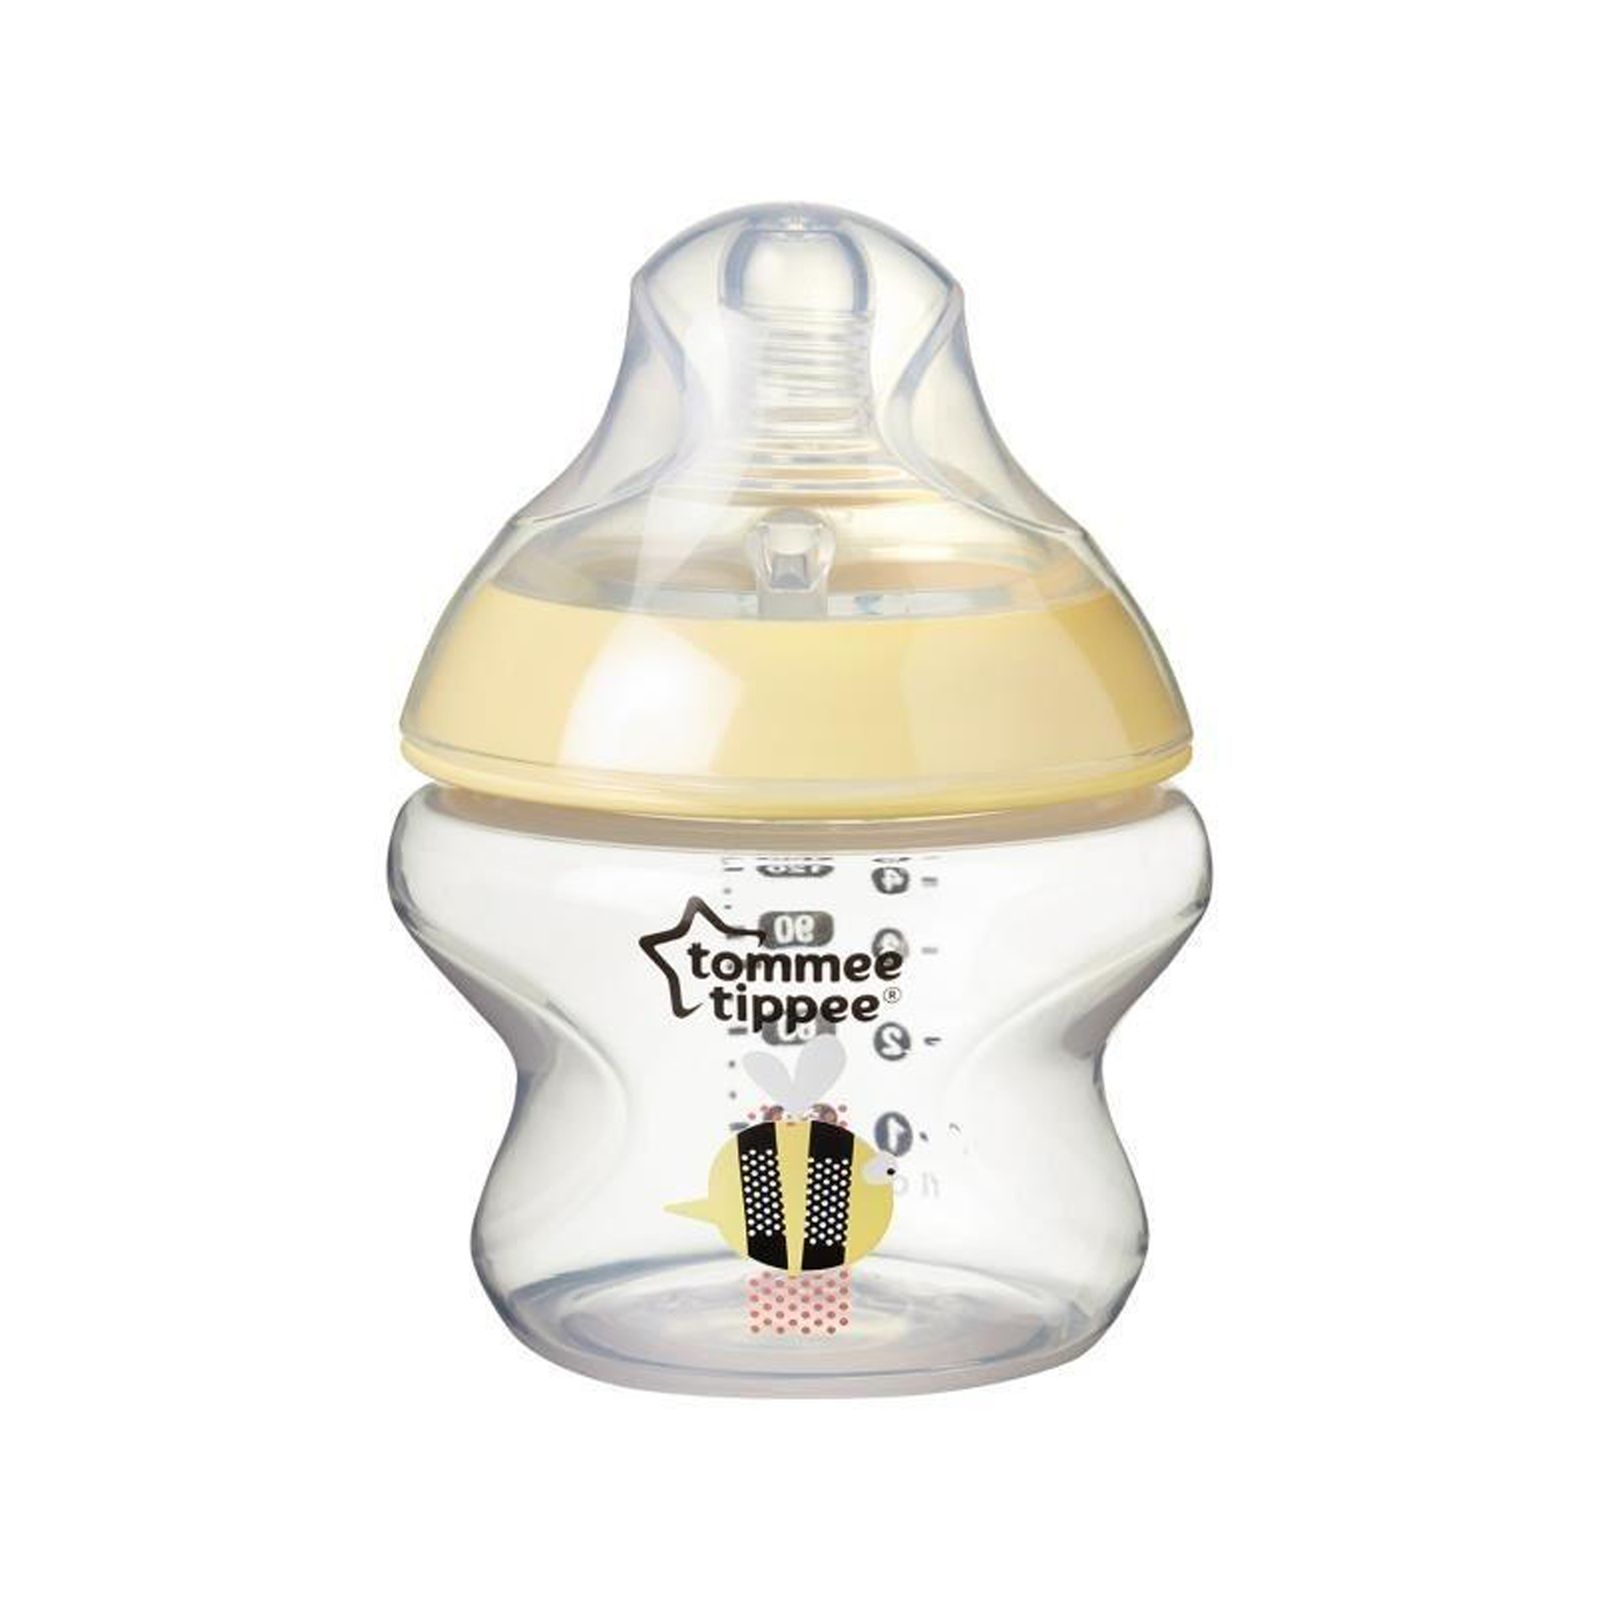 شیشه شیر تامی تیپی مدل T42270185 گنجایش 150میلی لیتر -  - 4